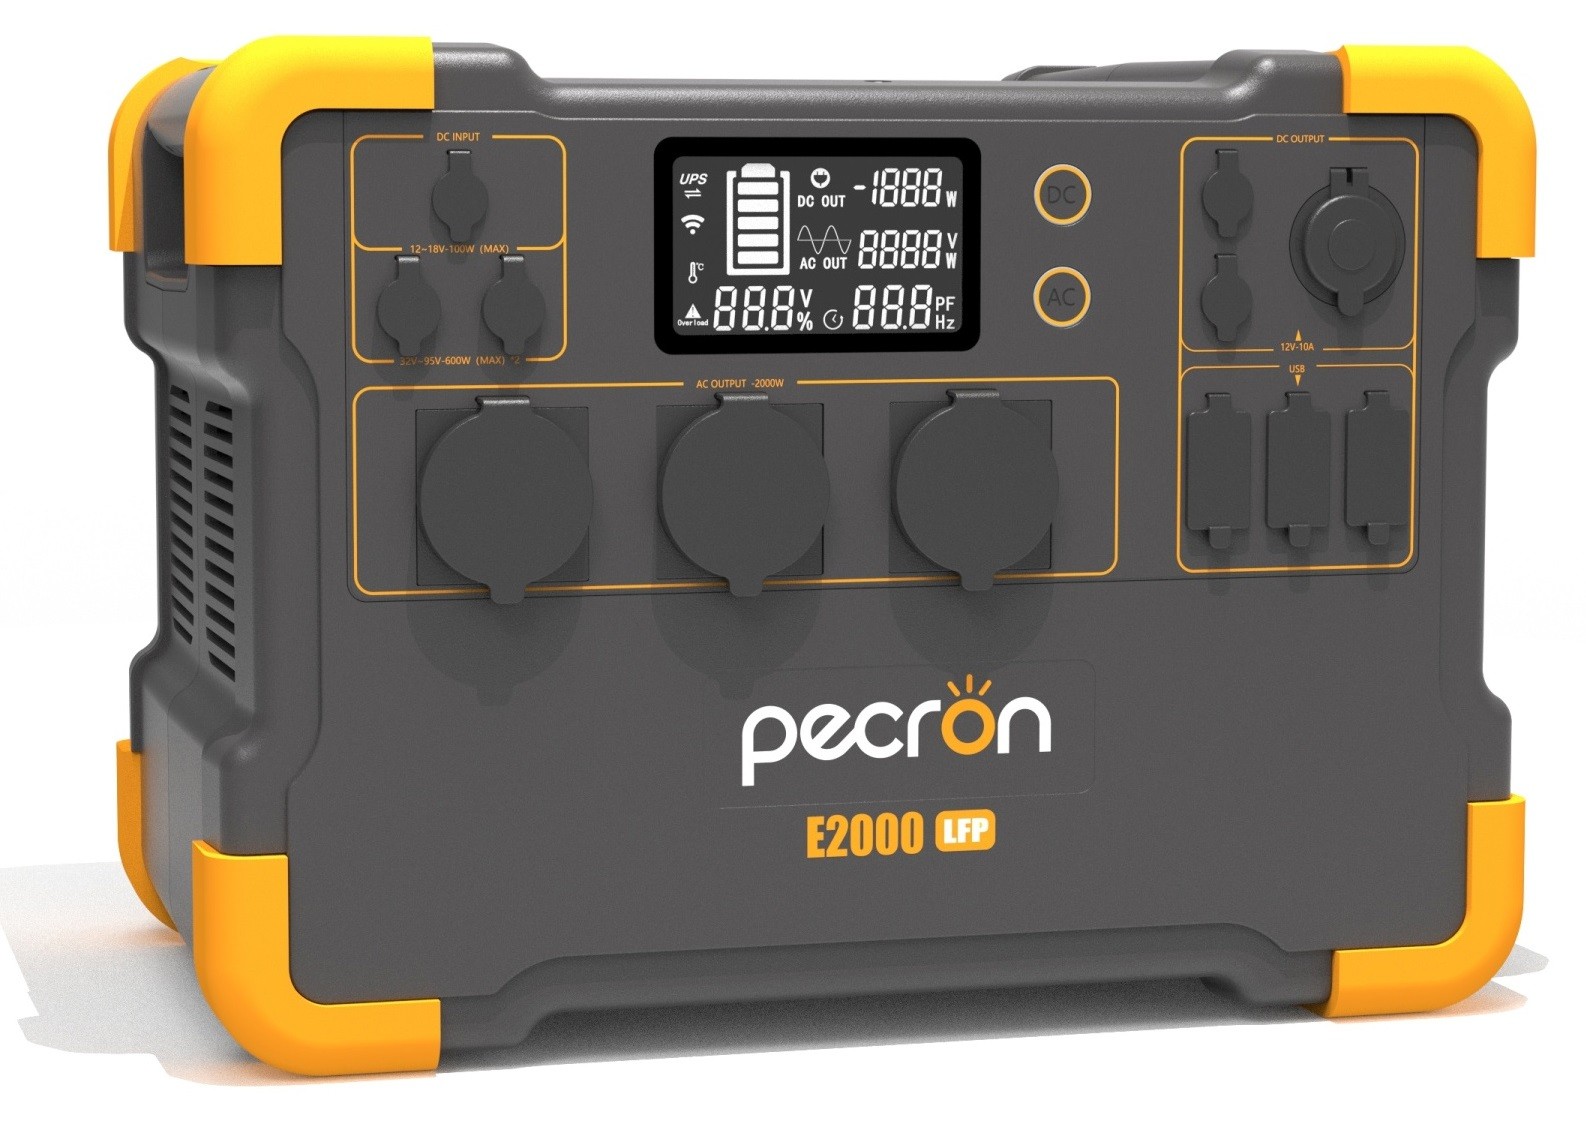 Портативная зарядная станция Pecron E2000LFP цена 48999.00 грн - фотография 2